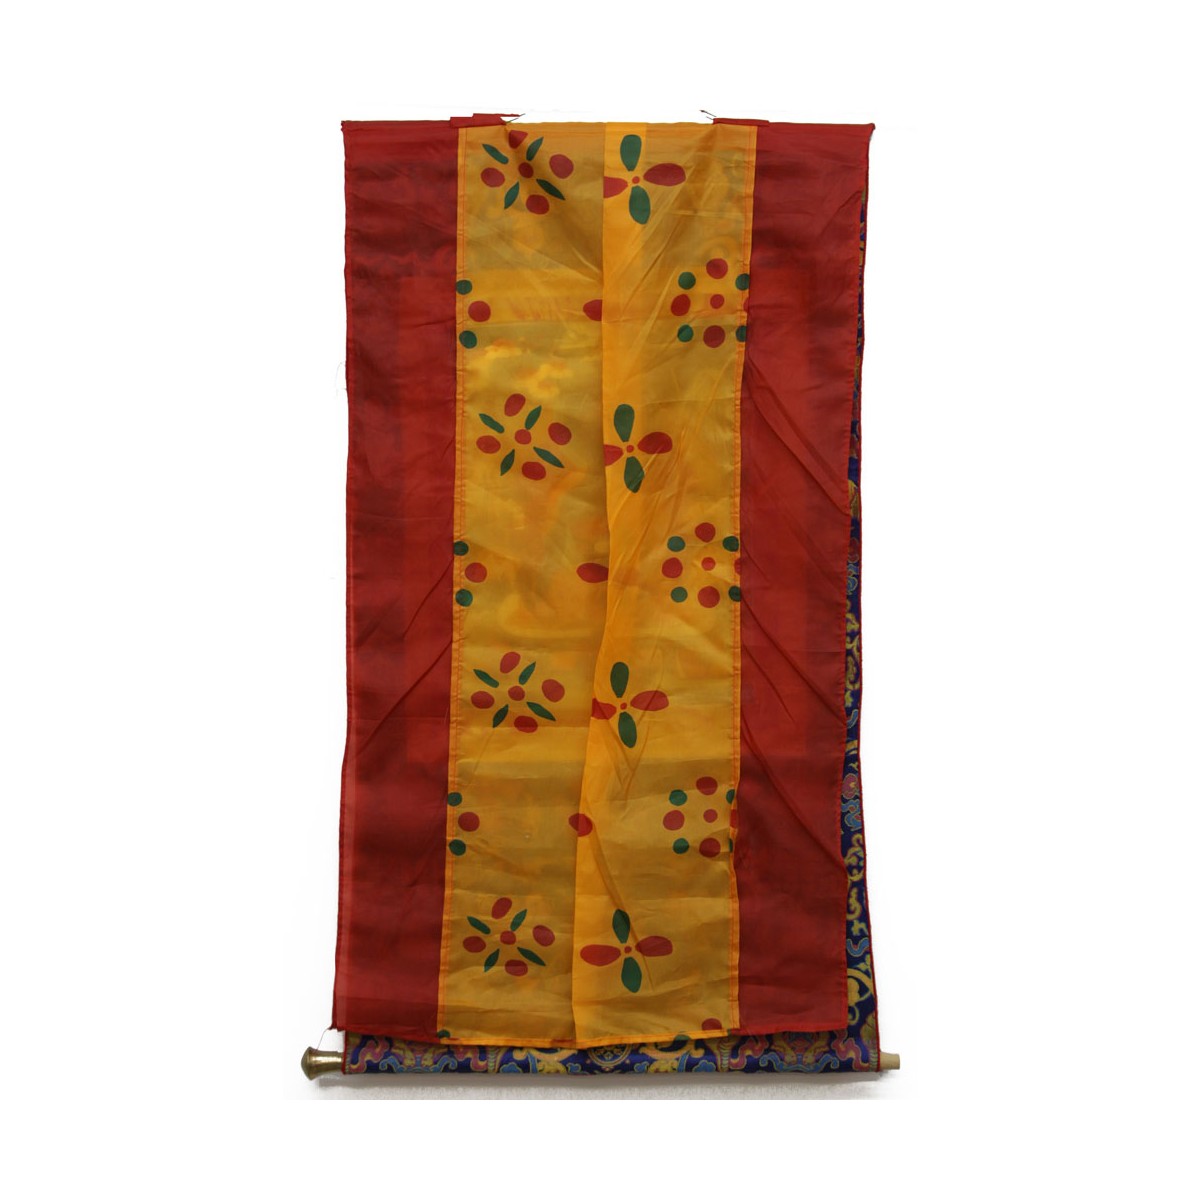 Two (2) Vintage Tibetan Tangka Wall Hanging Tapestries. Minor wear to paper